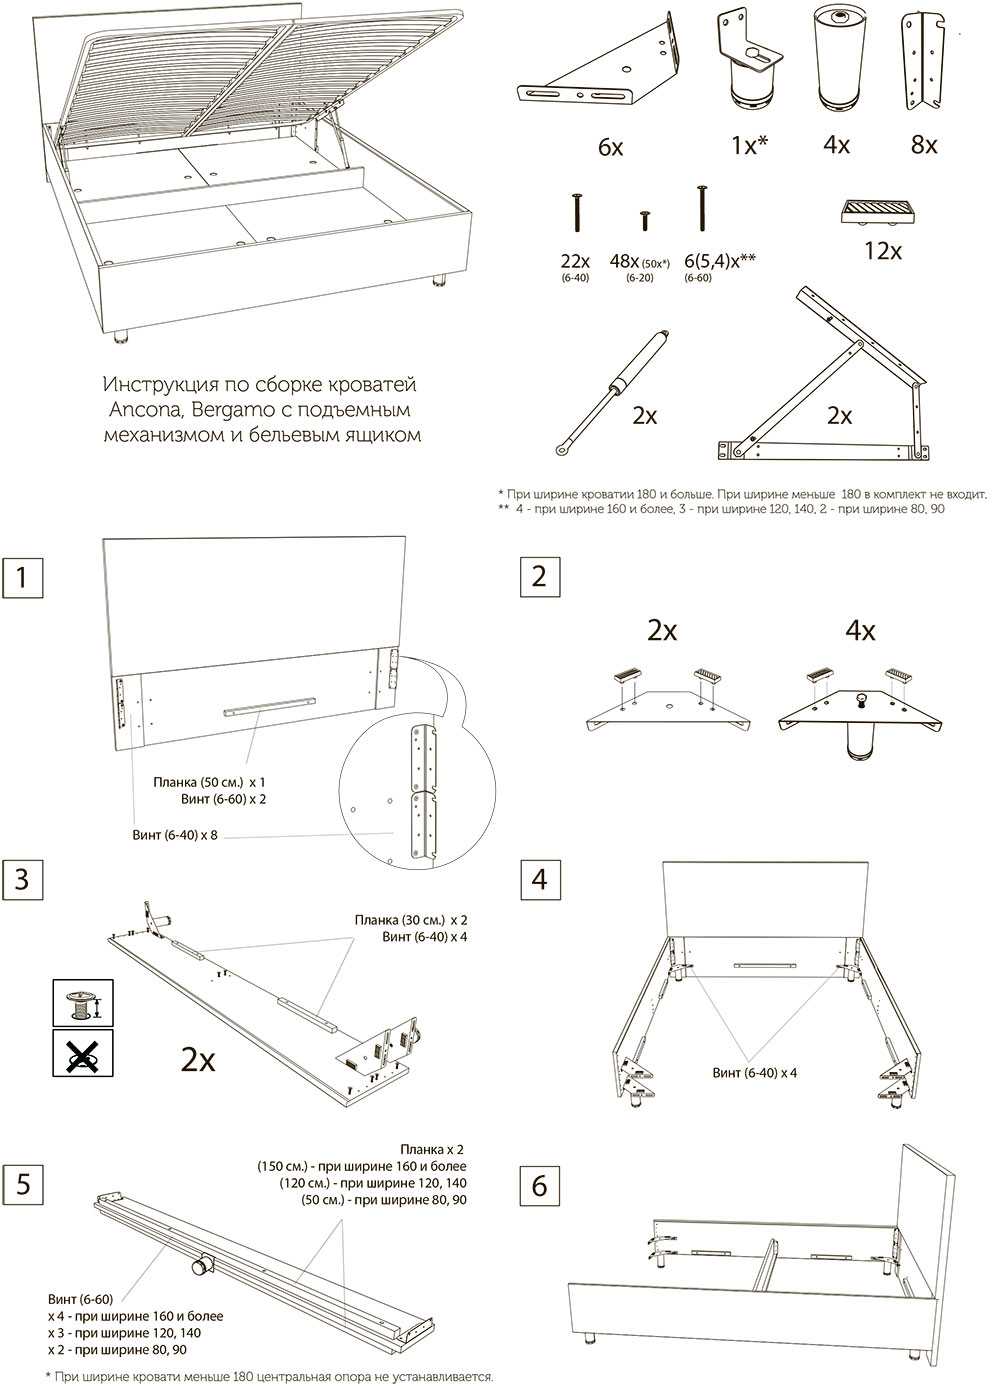 Как собрать кровать маятник: подготовка, инструменты и пошаговый монтаж